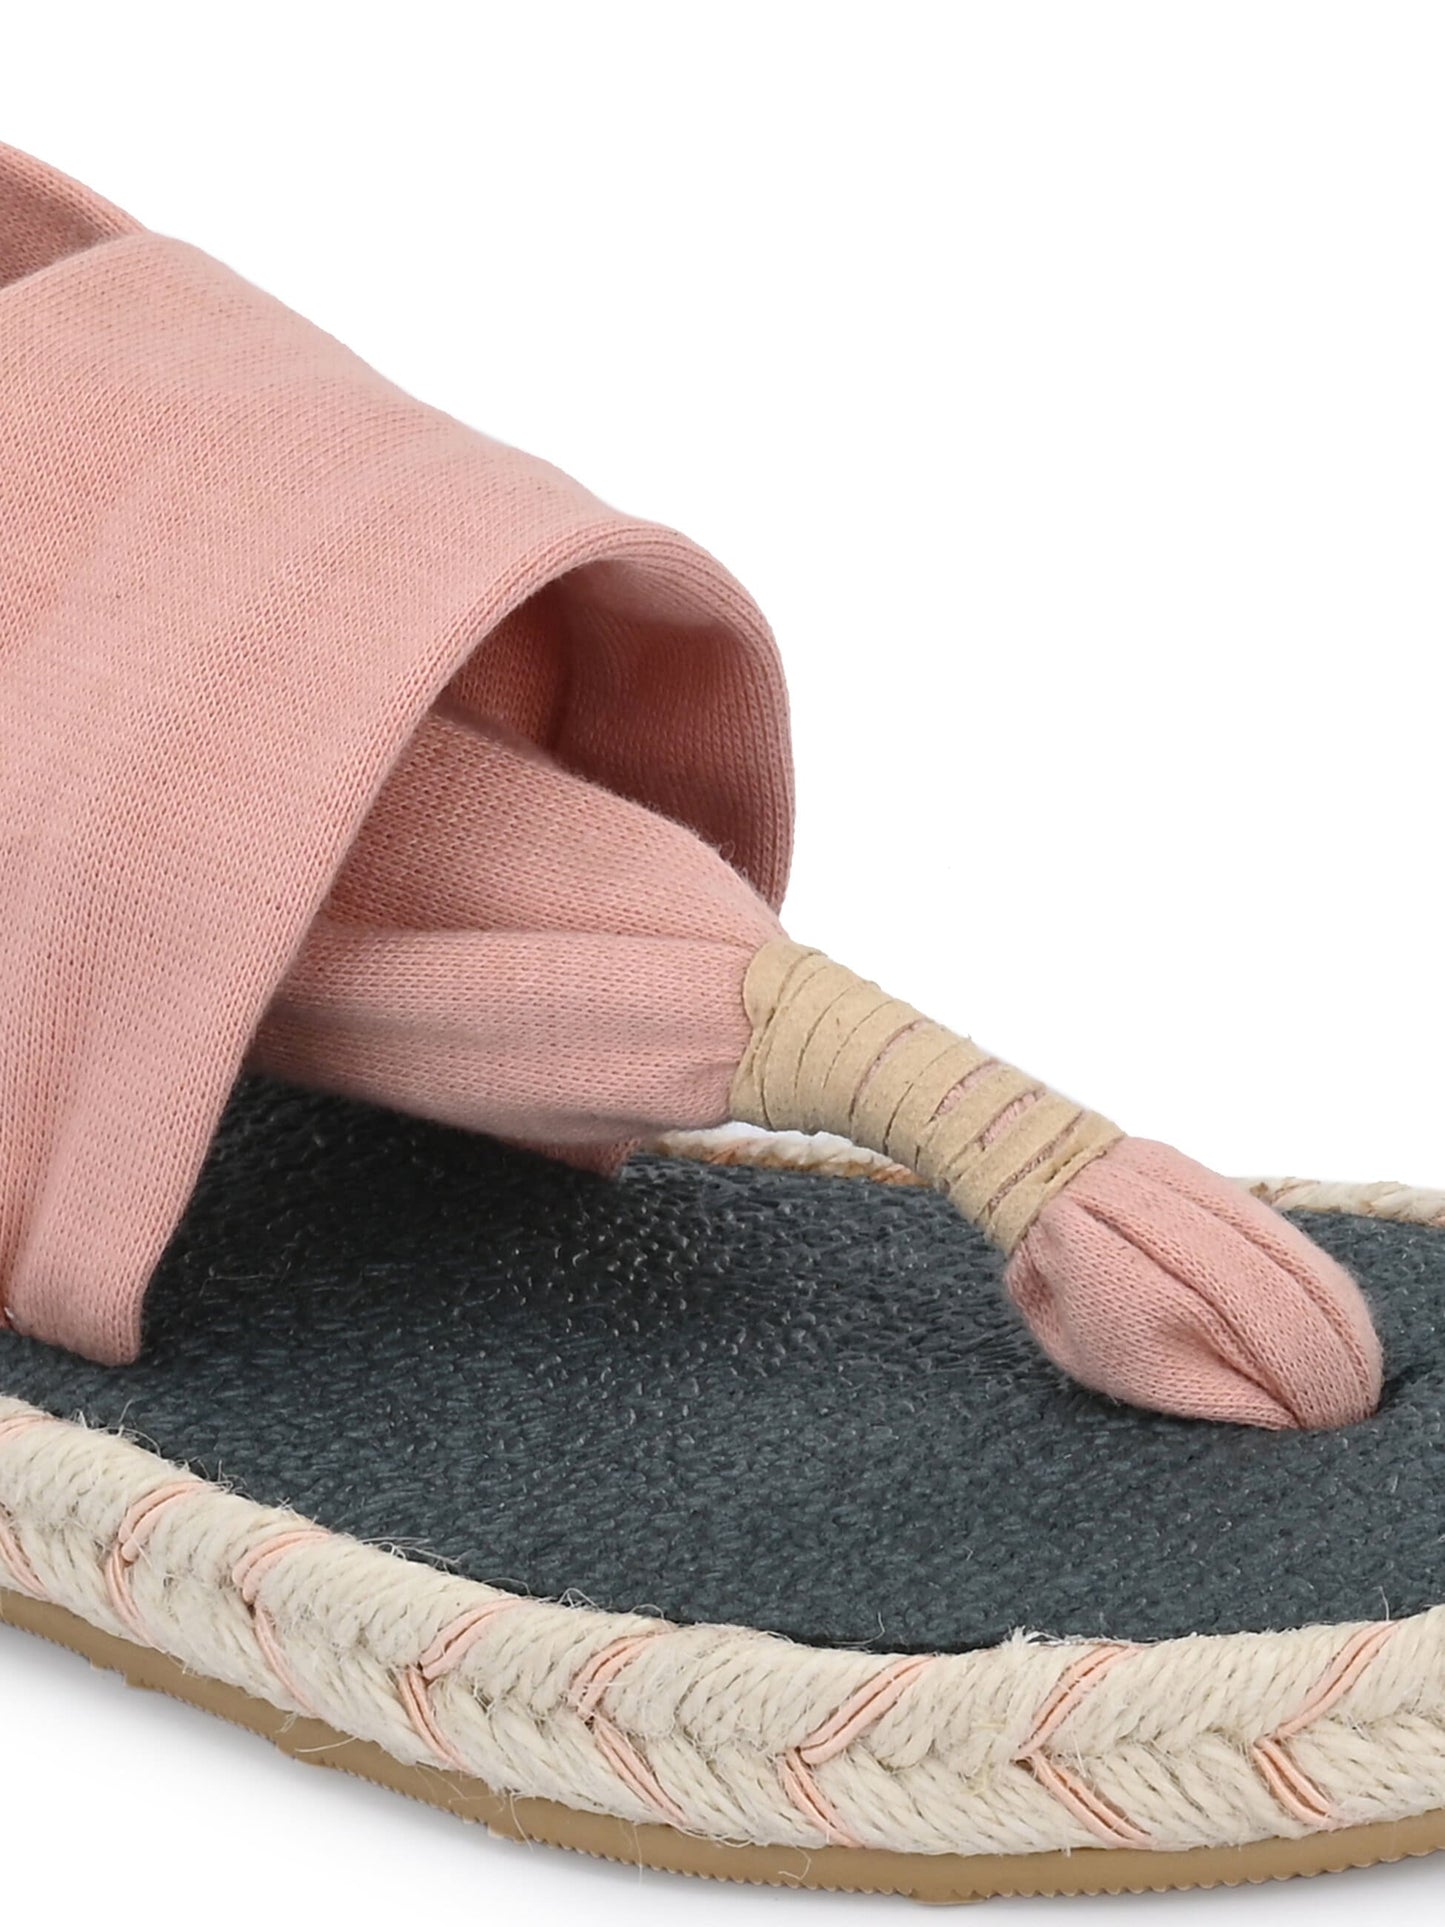 Cinderella Light Peach Yoga Mat Sandals for Women